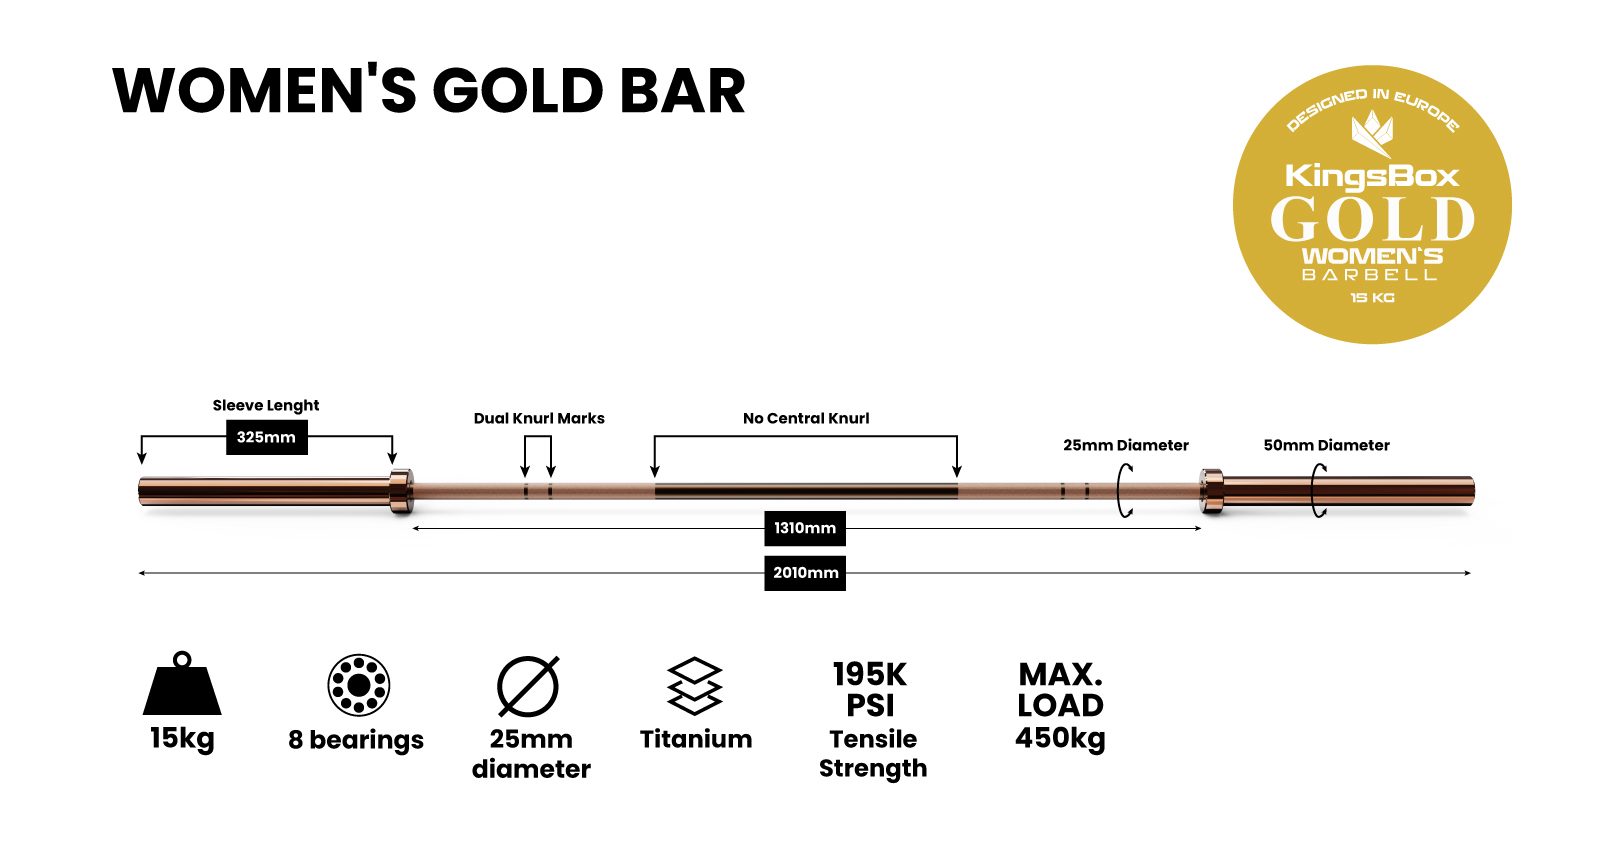 Women's Gold Bar | KingsBox